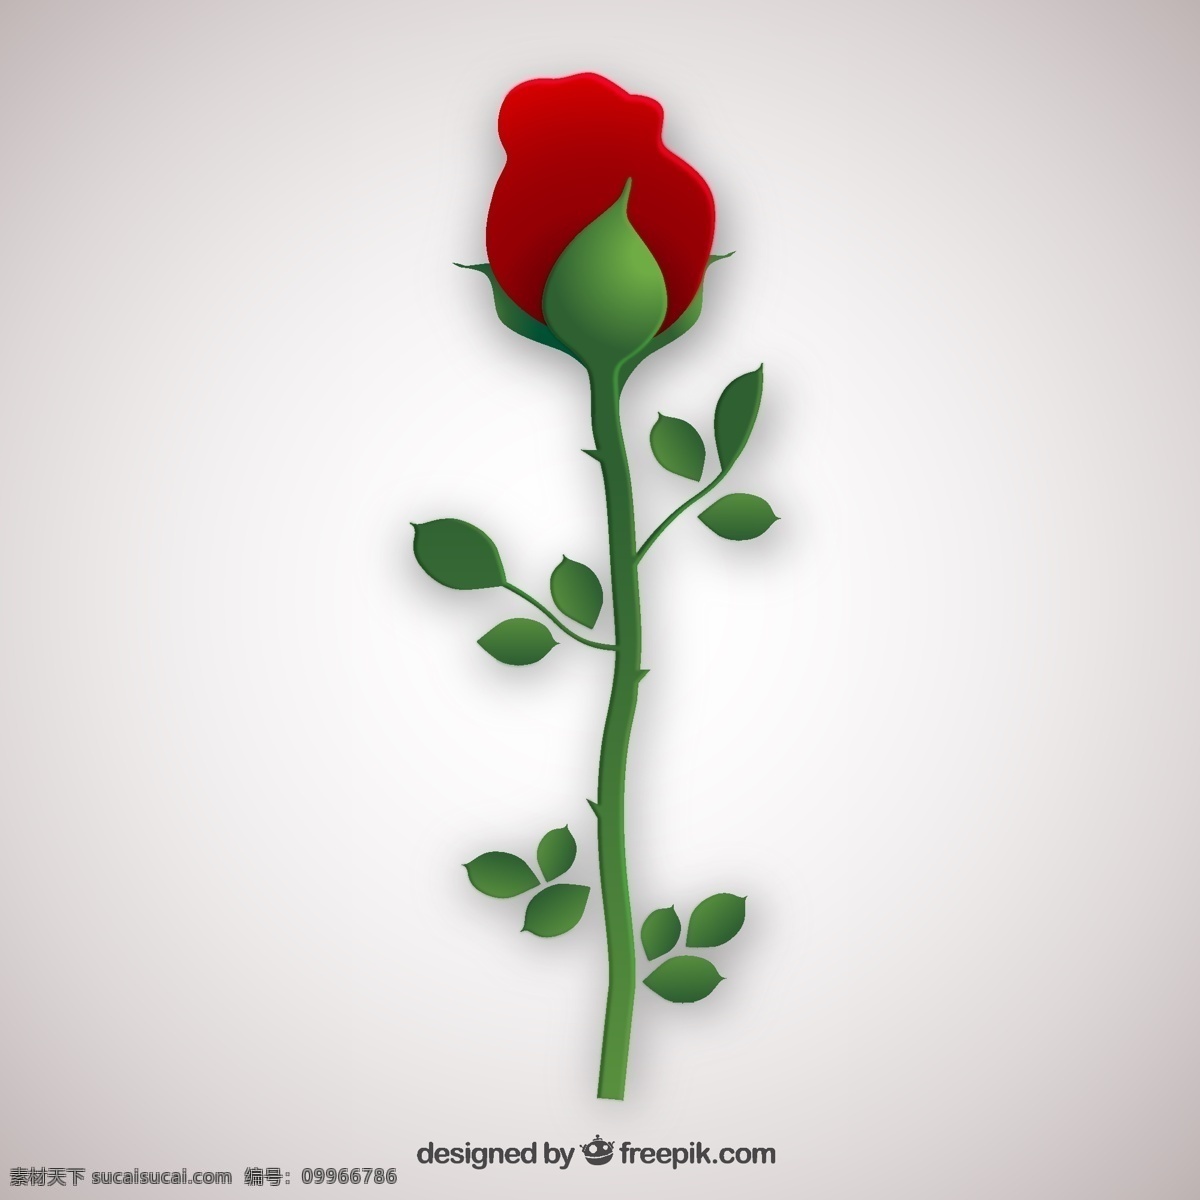 平面设计 中 玫瑰 花 爱 自然 春天 情人节 红色 扁平 植物 百花齐放 春天的花朵 绽放 白色